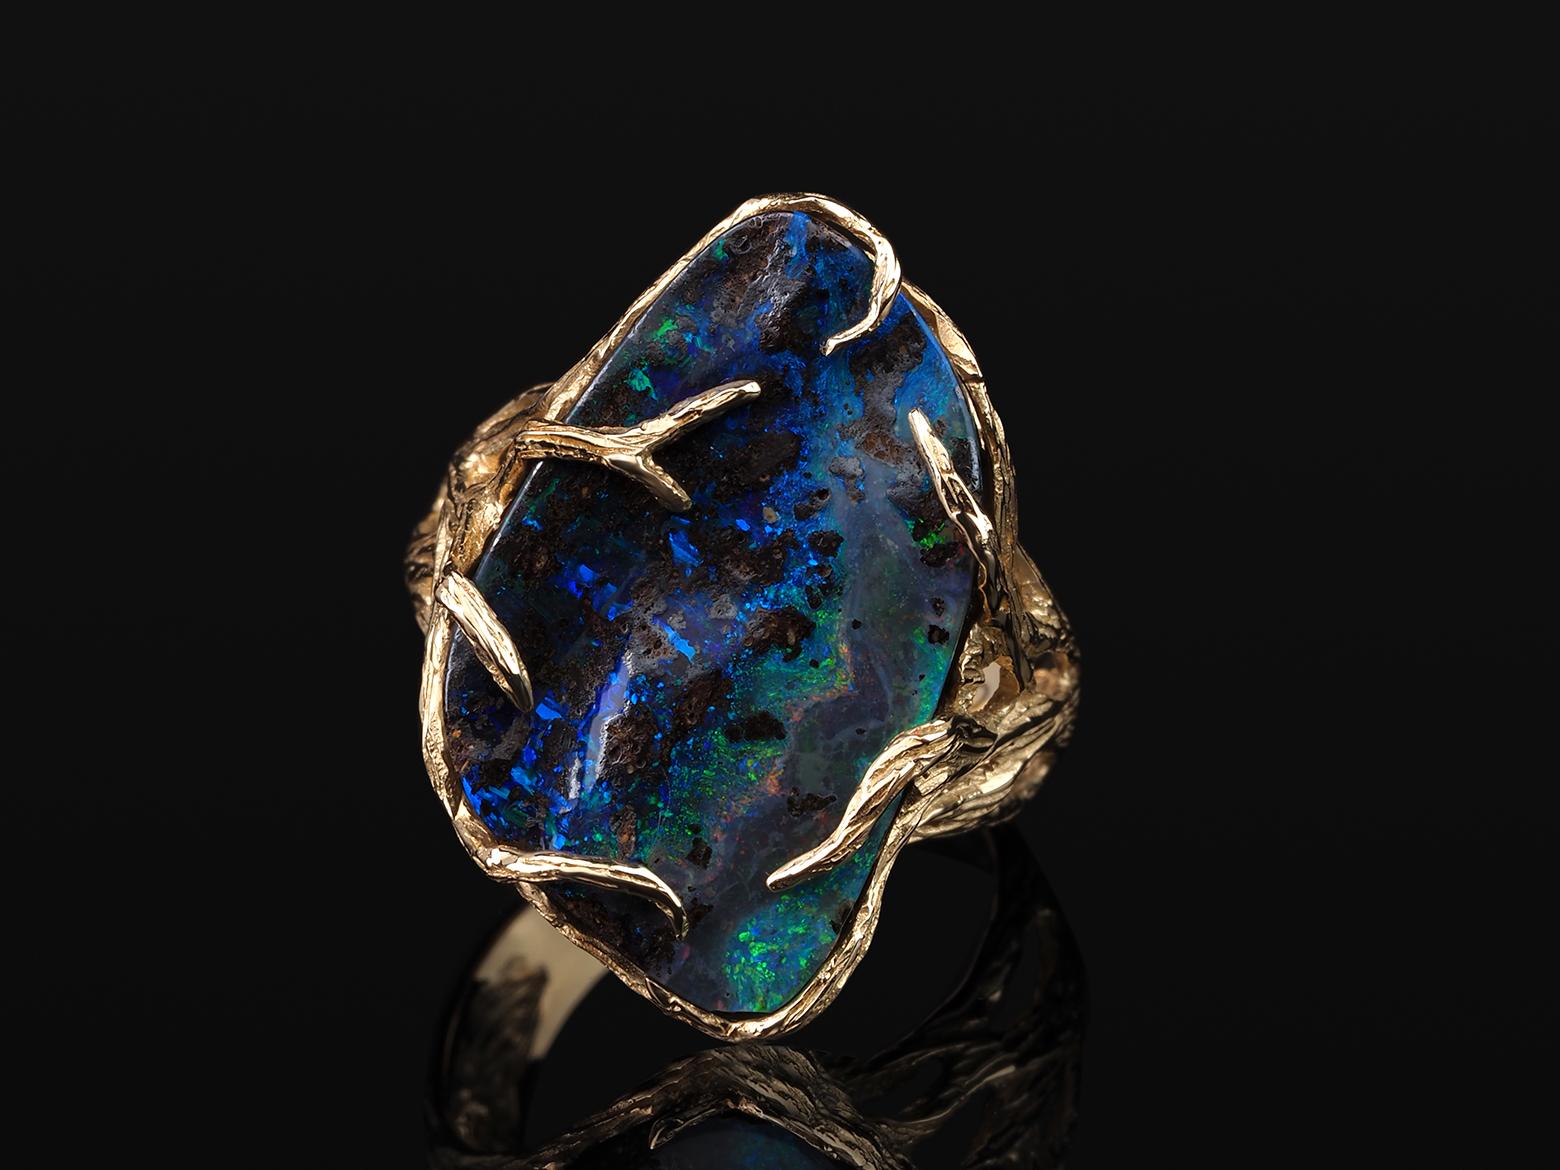 14K Gelbgold Ring mit natürlichem Boulder Opal
Opal Herkunft - Australien
Gewicht des Opals - 11 Karat
Steinmaße - 0,12 х 0,55 х 0,9 in /  3 х 14 х 23 mm
Ringgewicht - 7.06 Gramm
Ringgröße - 7.5 US - 56 EU

Roots Collection 


Wir versenden unseren